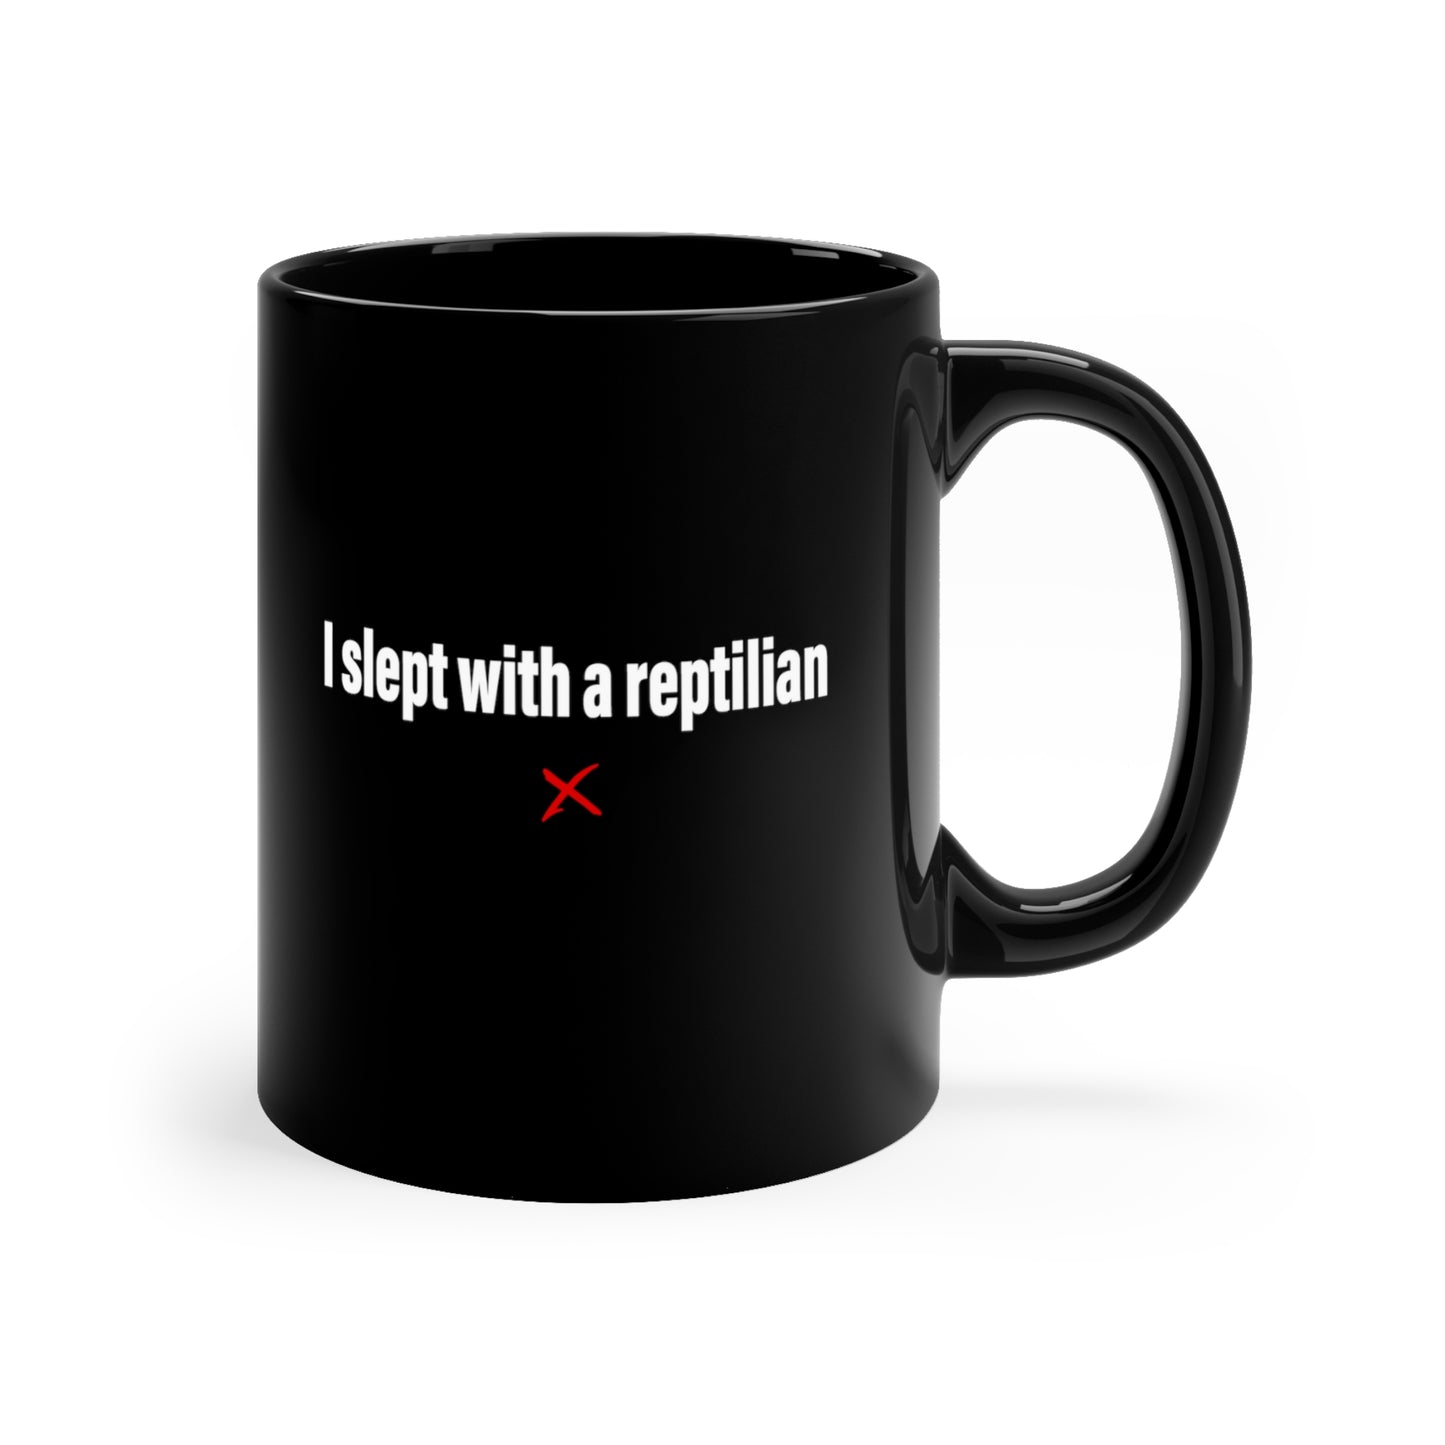 I slept with a reptilian - Mug